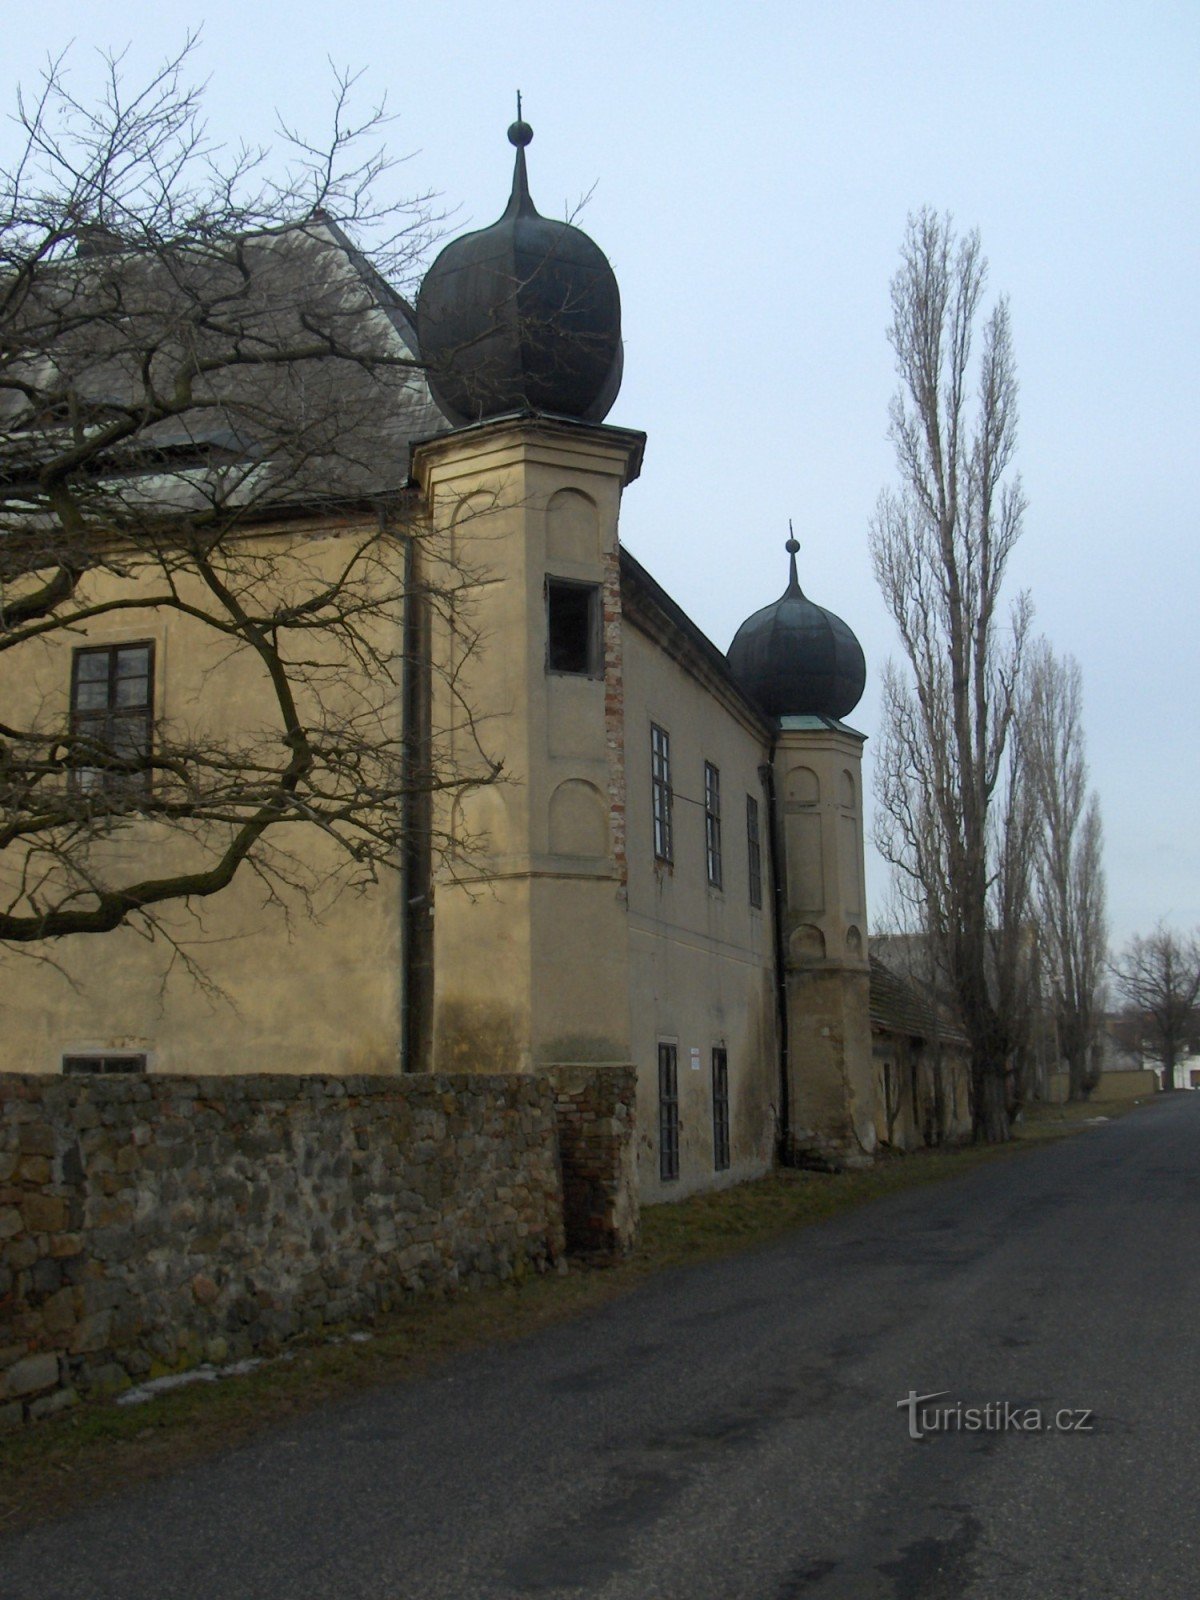 Vičice slott